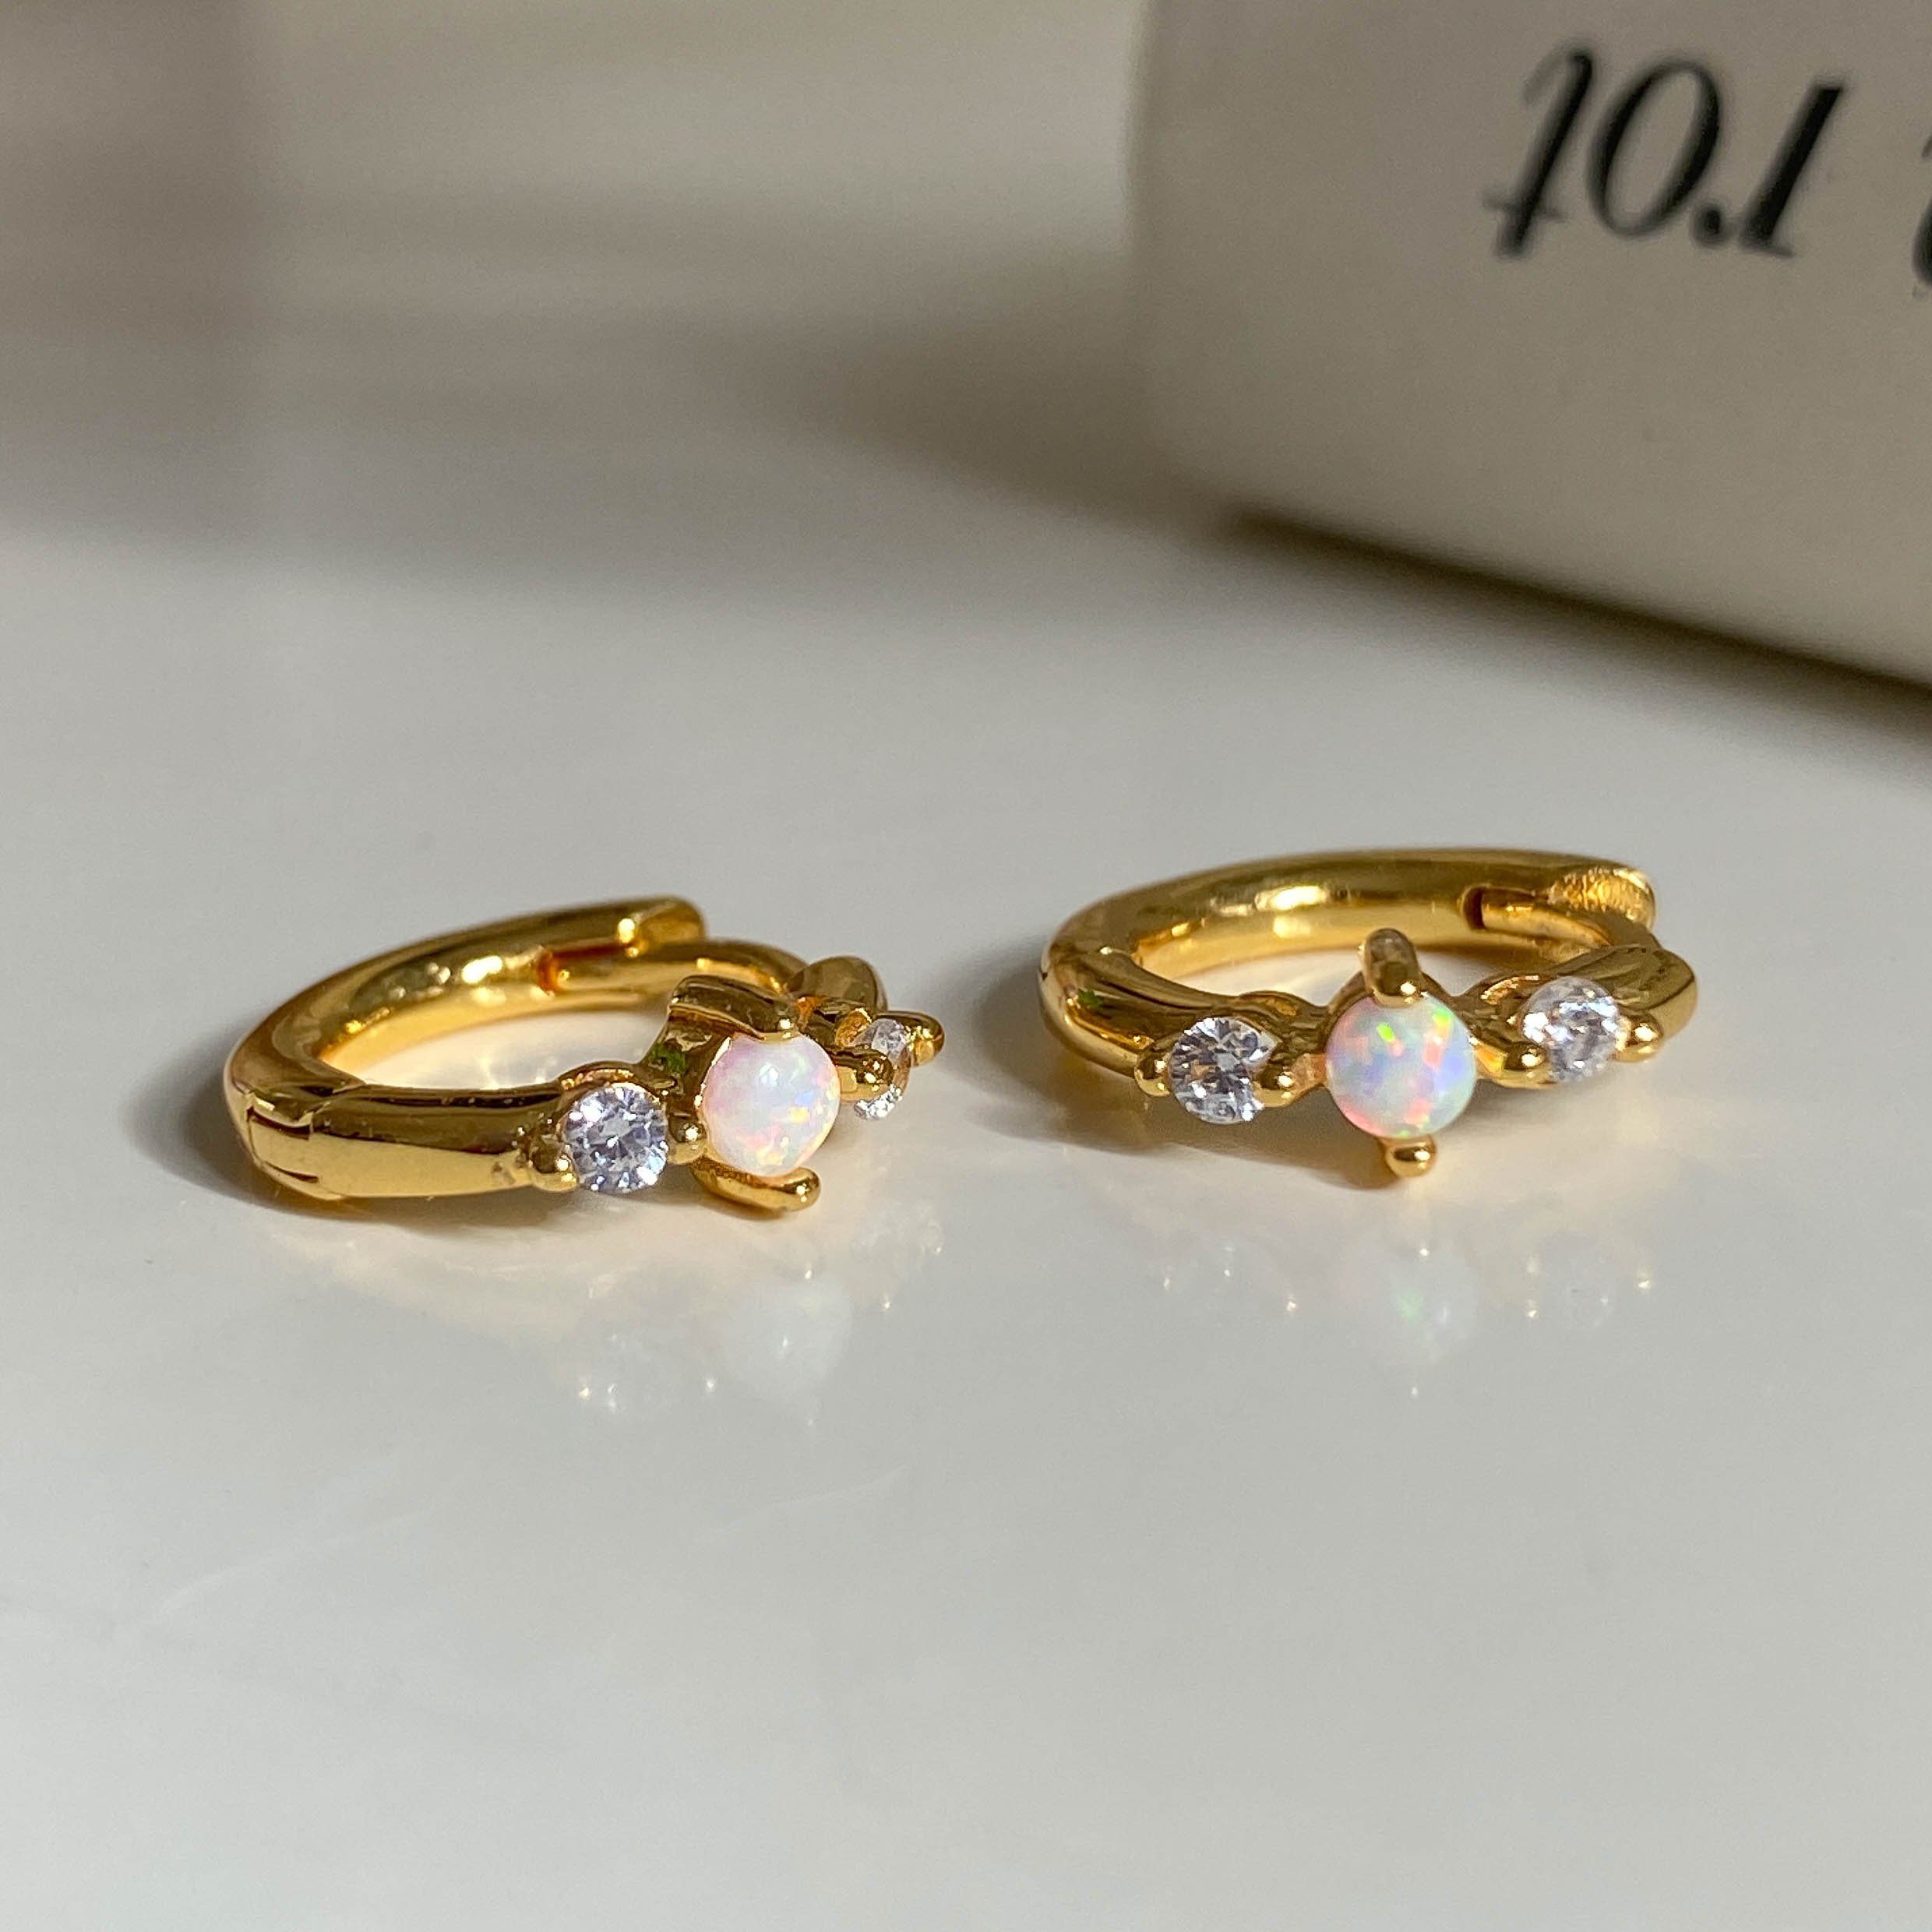 weiße Brandlinger Brisbane, vergoldet, Zirkoniasteine und Silber Creolen Weißer Ohrringe Paar Opal 925